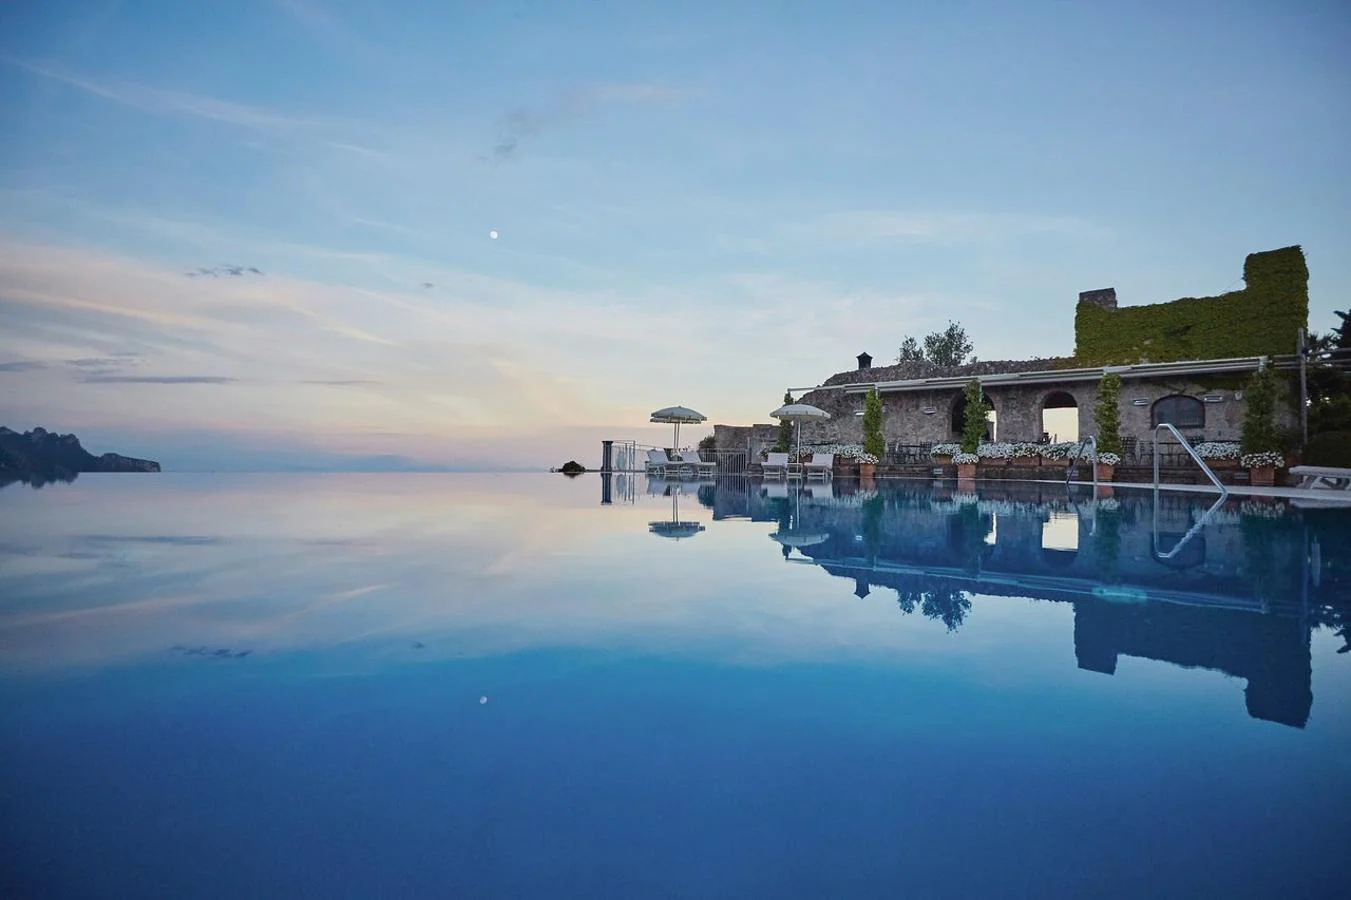 Belmond Hotel Caruso, Ravello, Italia. Pagar cerca de 500 euros por noche tiene que ver con que este hotel de lujo italiano tenga consigo una de las piscinas más espectaculares del mundo, la cuál consigue hacerte dudar de dónde acaba y empieza el cielo. ¿Dónde está la línea del horizonte?